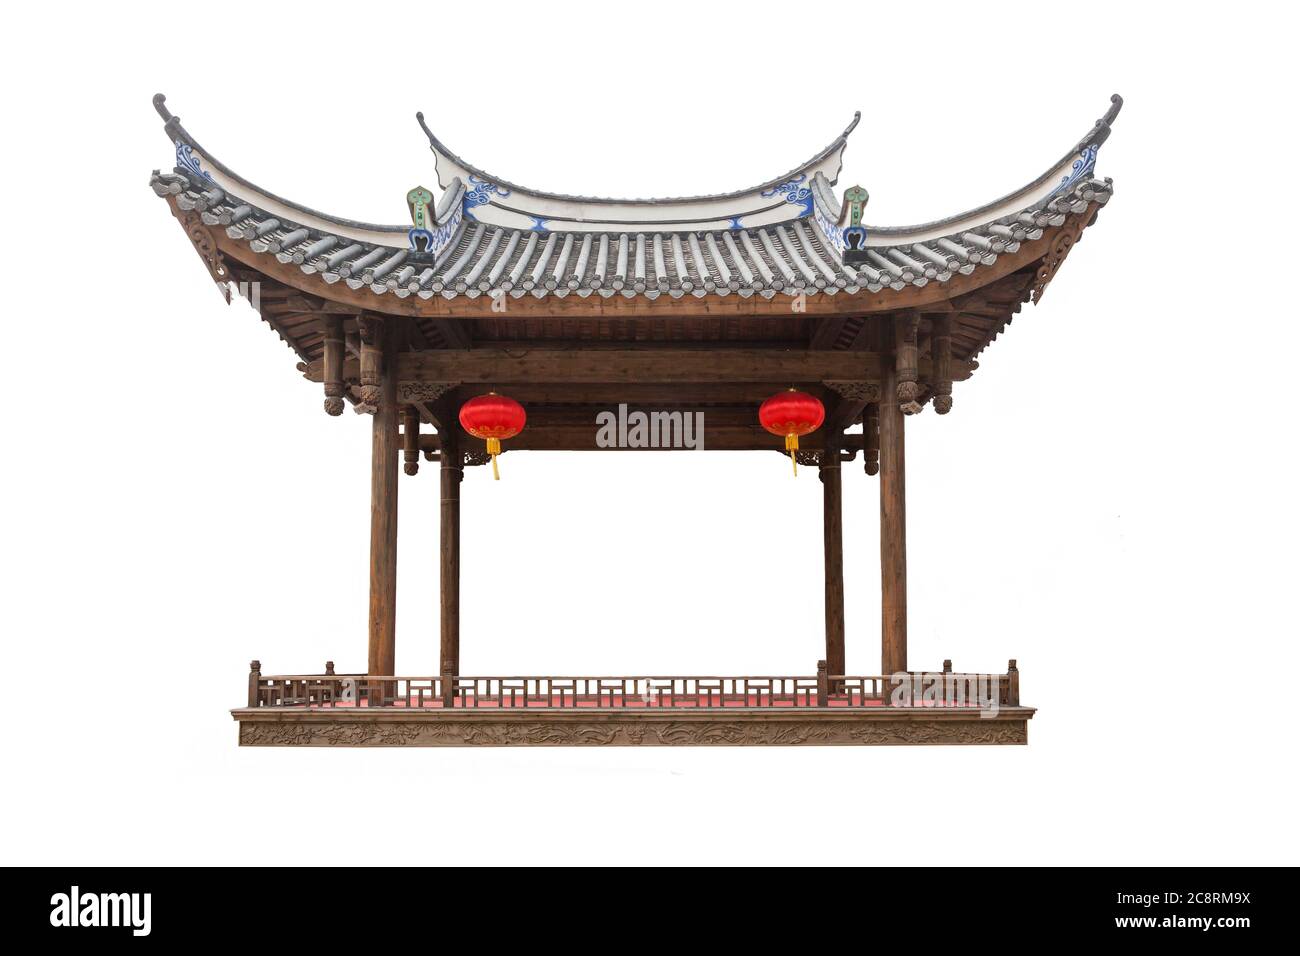 Alter chinesischer traditioneller Pavillon oder Bühne mit roter Laterne, isoliert auf weißem Hintergrund Stockfoto